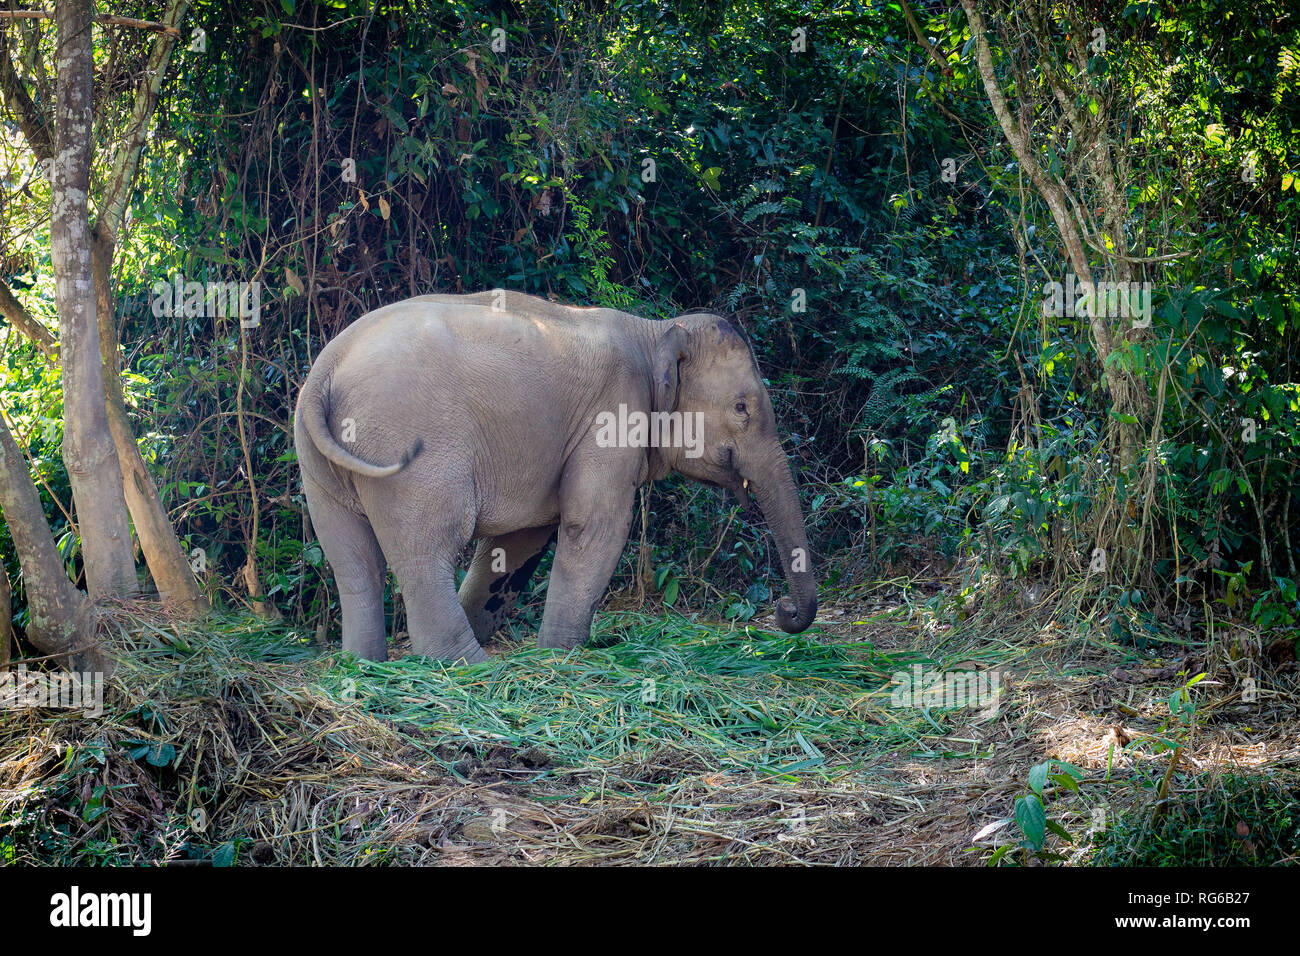 In der Jungen von Laos Elefant. Außerhalb von Luang Prabang. Speichern Sie die Elefanten. Elefant steht ruhig im Wald. Stockfoto